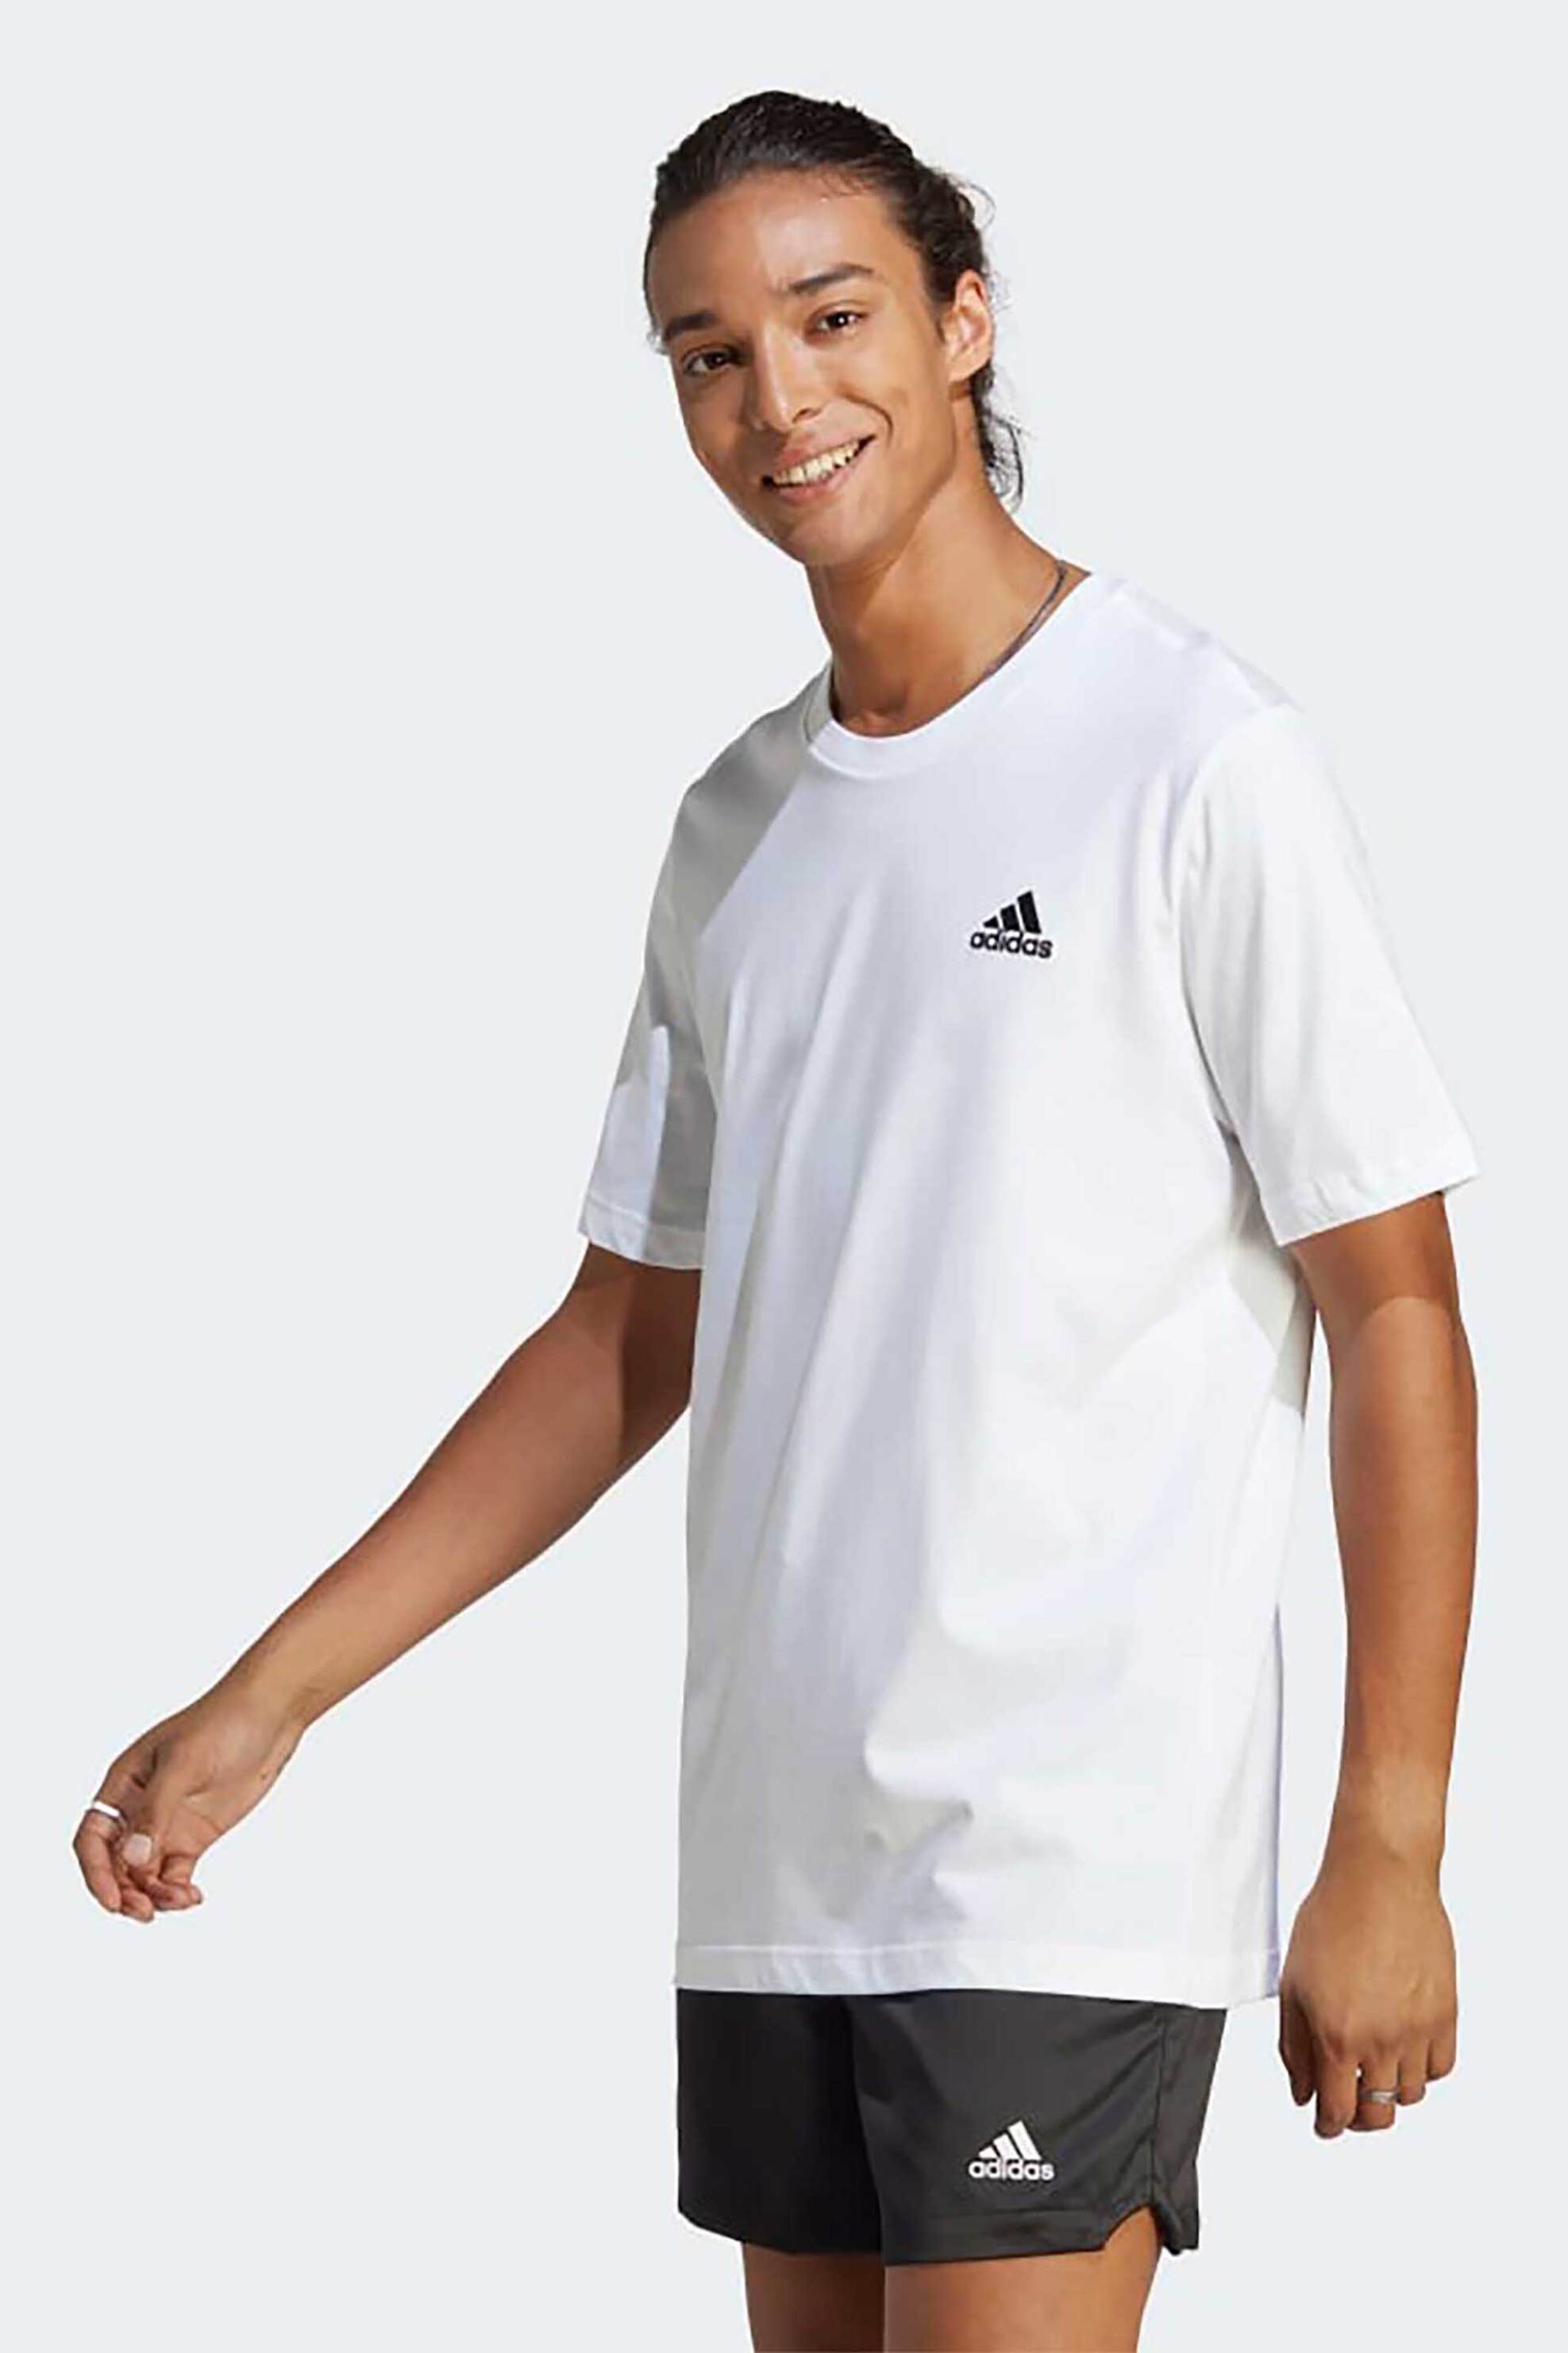 Ανδρική Μόδα > Ανδρικά Αθλητικά > Ανδρικά Αθλητικά Ρούχα > Αθλητικές Μπλούζες > Ανδρικά Αθλητικά T-Shirts Adidas ανδρικό αθλητικό T-shirt μονόχρωμο με contrast κεντημένο λογότυπο "Essentials" - IC9286 Λευκό